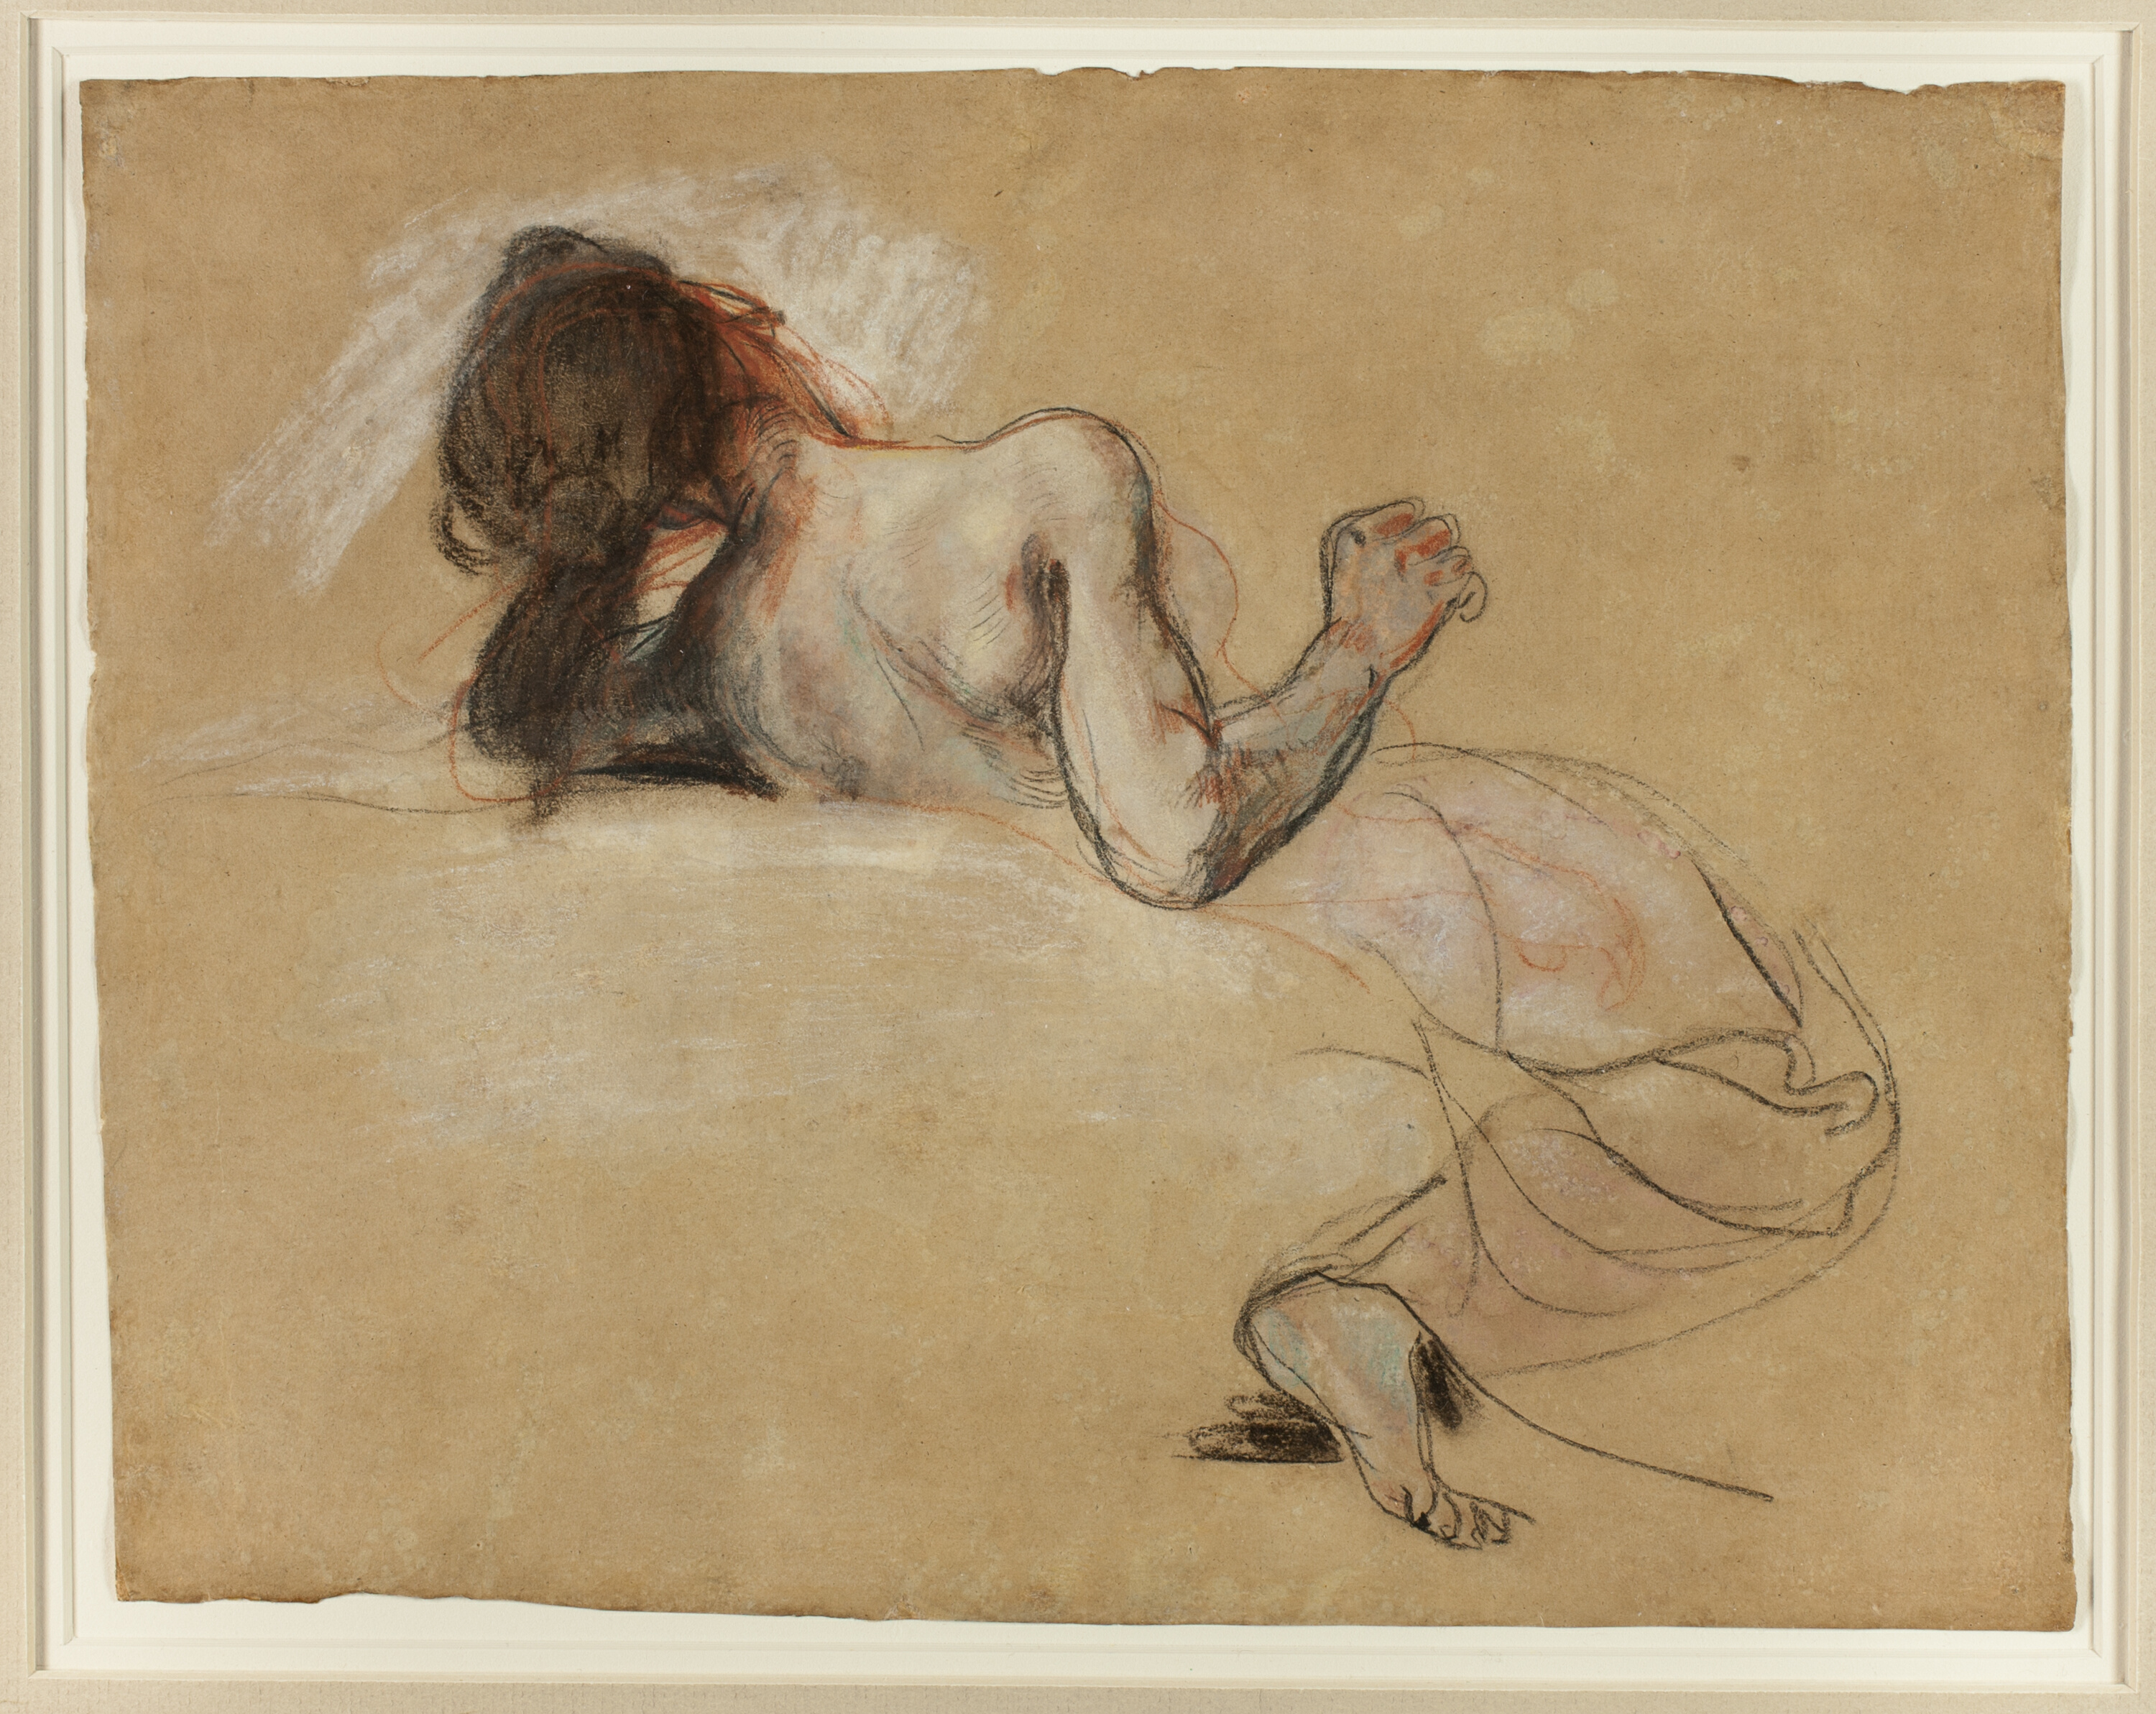 Femme accroupie by Eugène Delacroix - 1827 - 24,6 × 31,4 cm Art Institute of Chicago